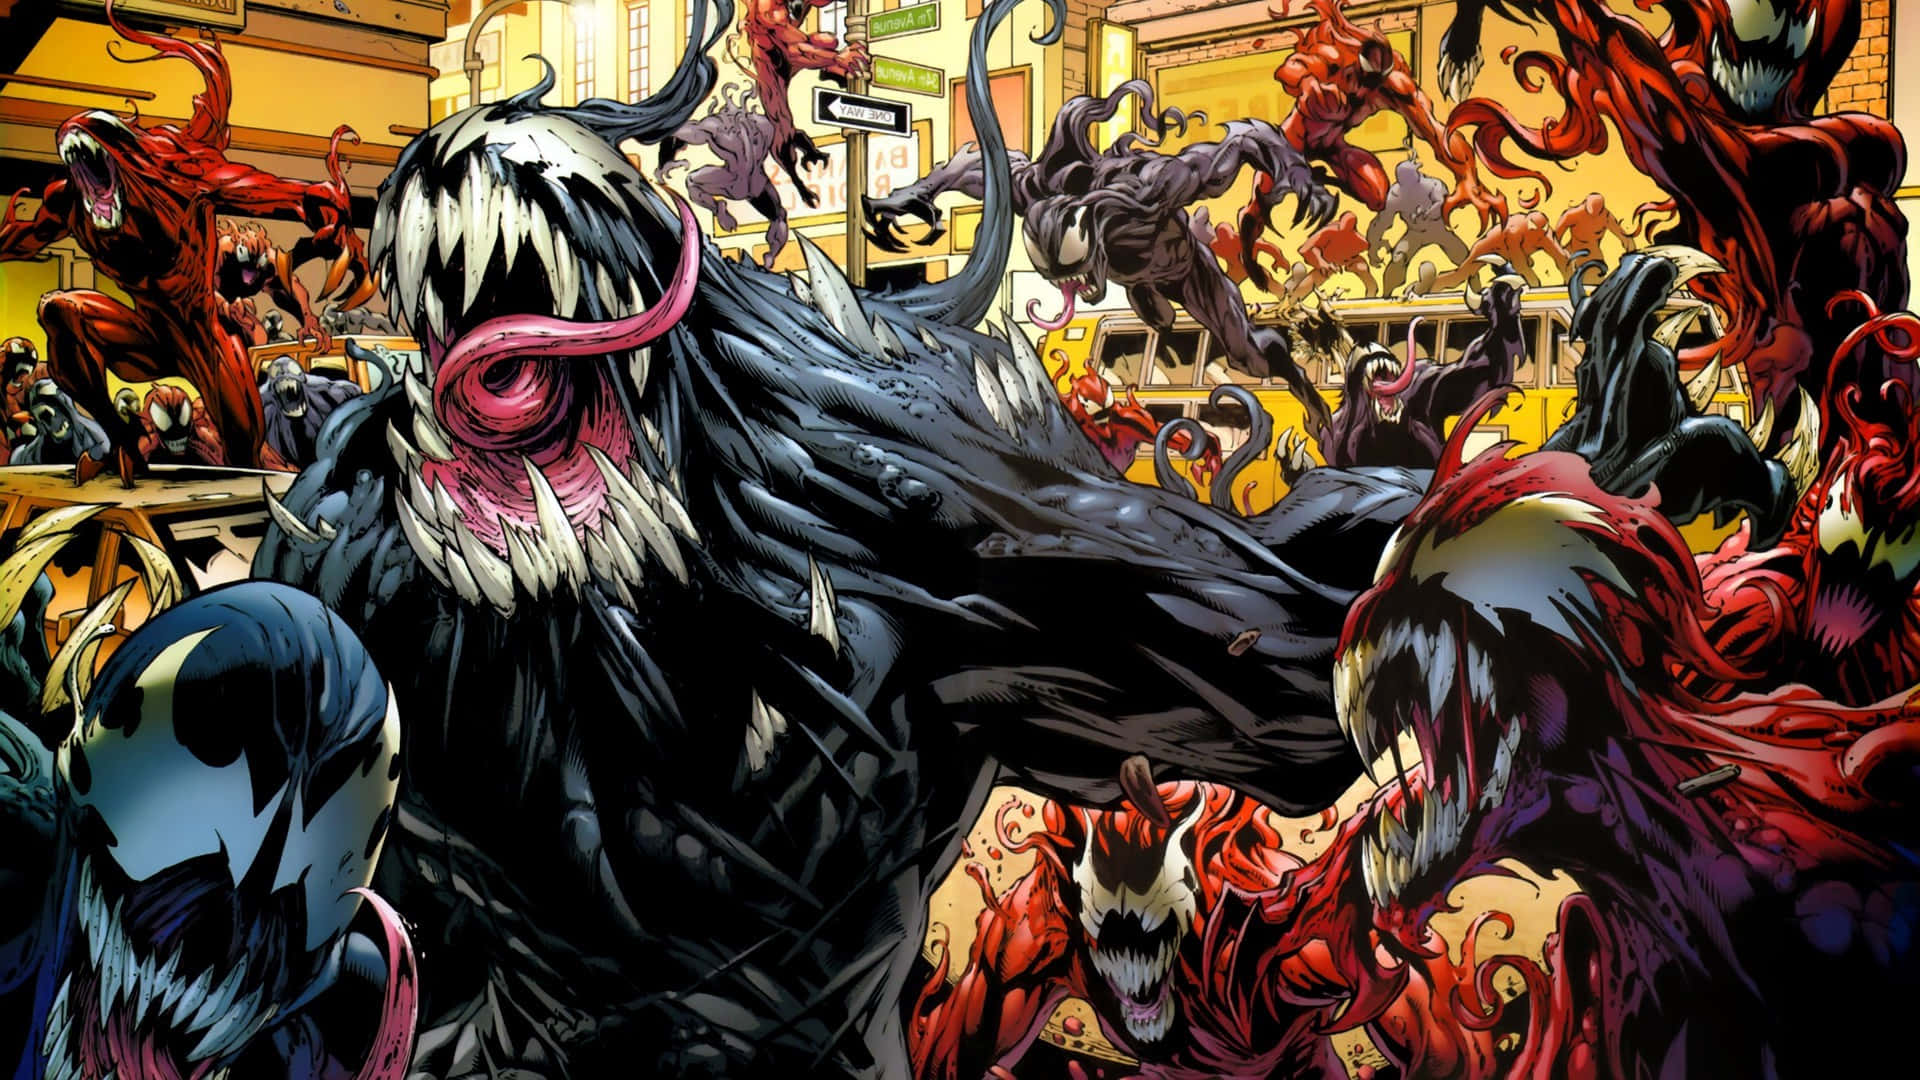 En spændende kamp mellem god og ond, Venom tager fat på Carnage i en episk styrkekamp! Wallpaper